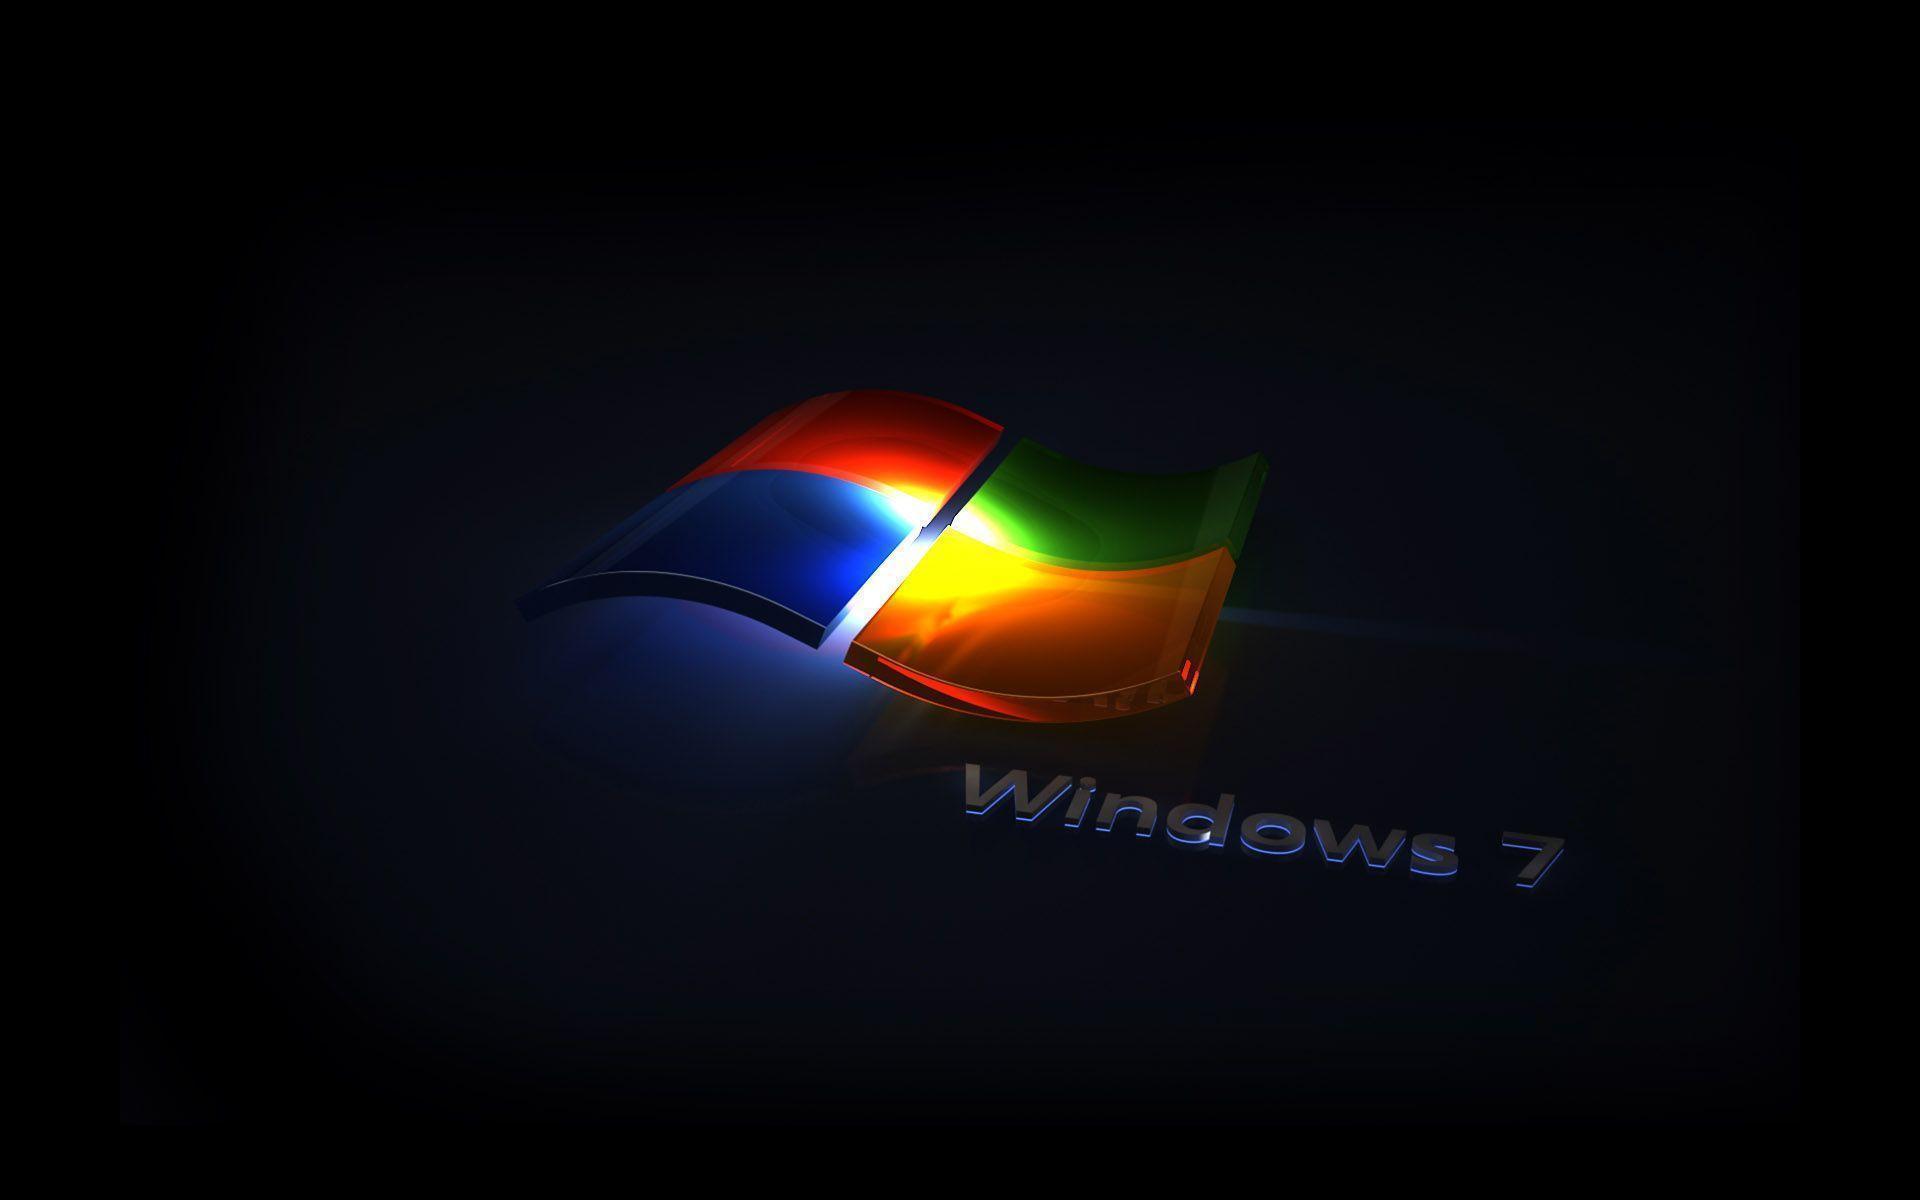 Wallpaper Windows 7 Ultimate 3d Keren Image Num 16